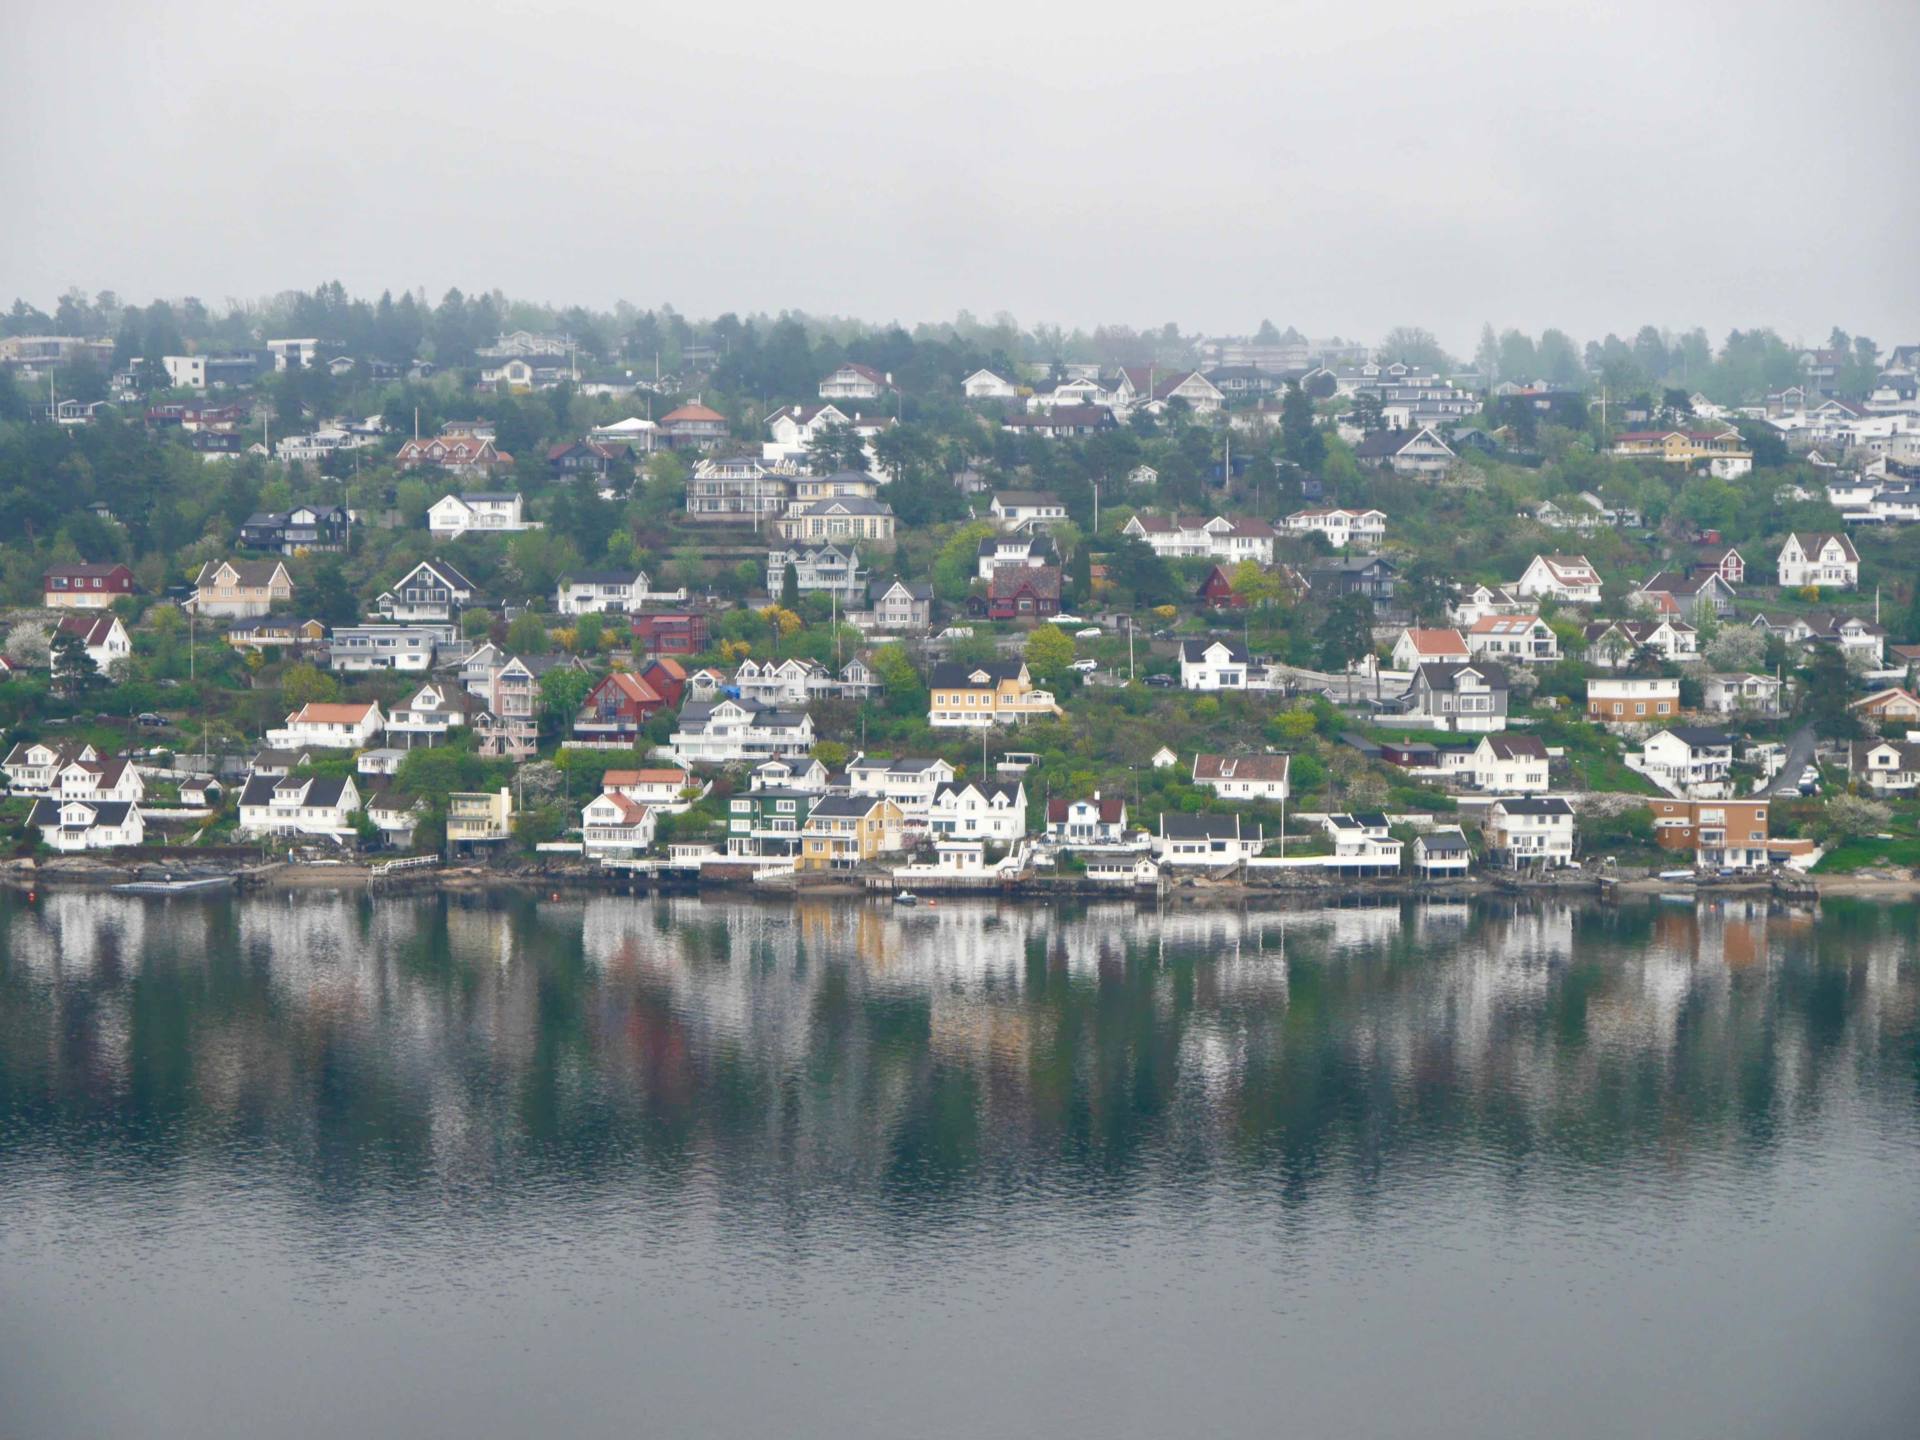 Crucero escandinavo por el fiordo de Oslo